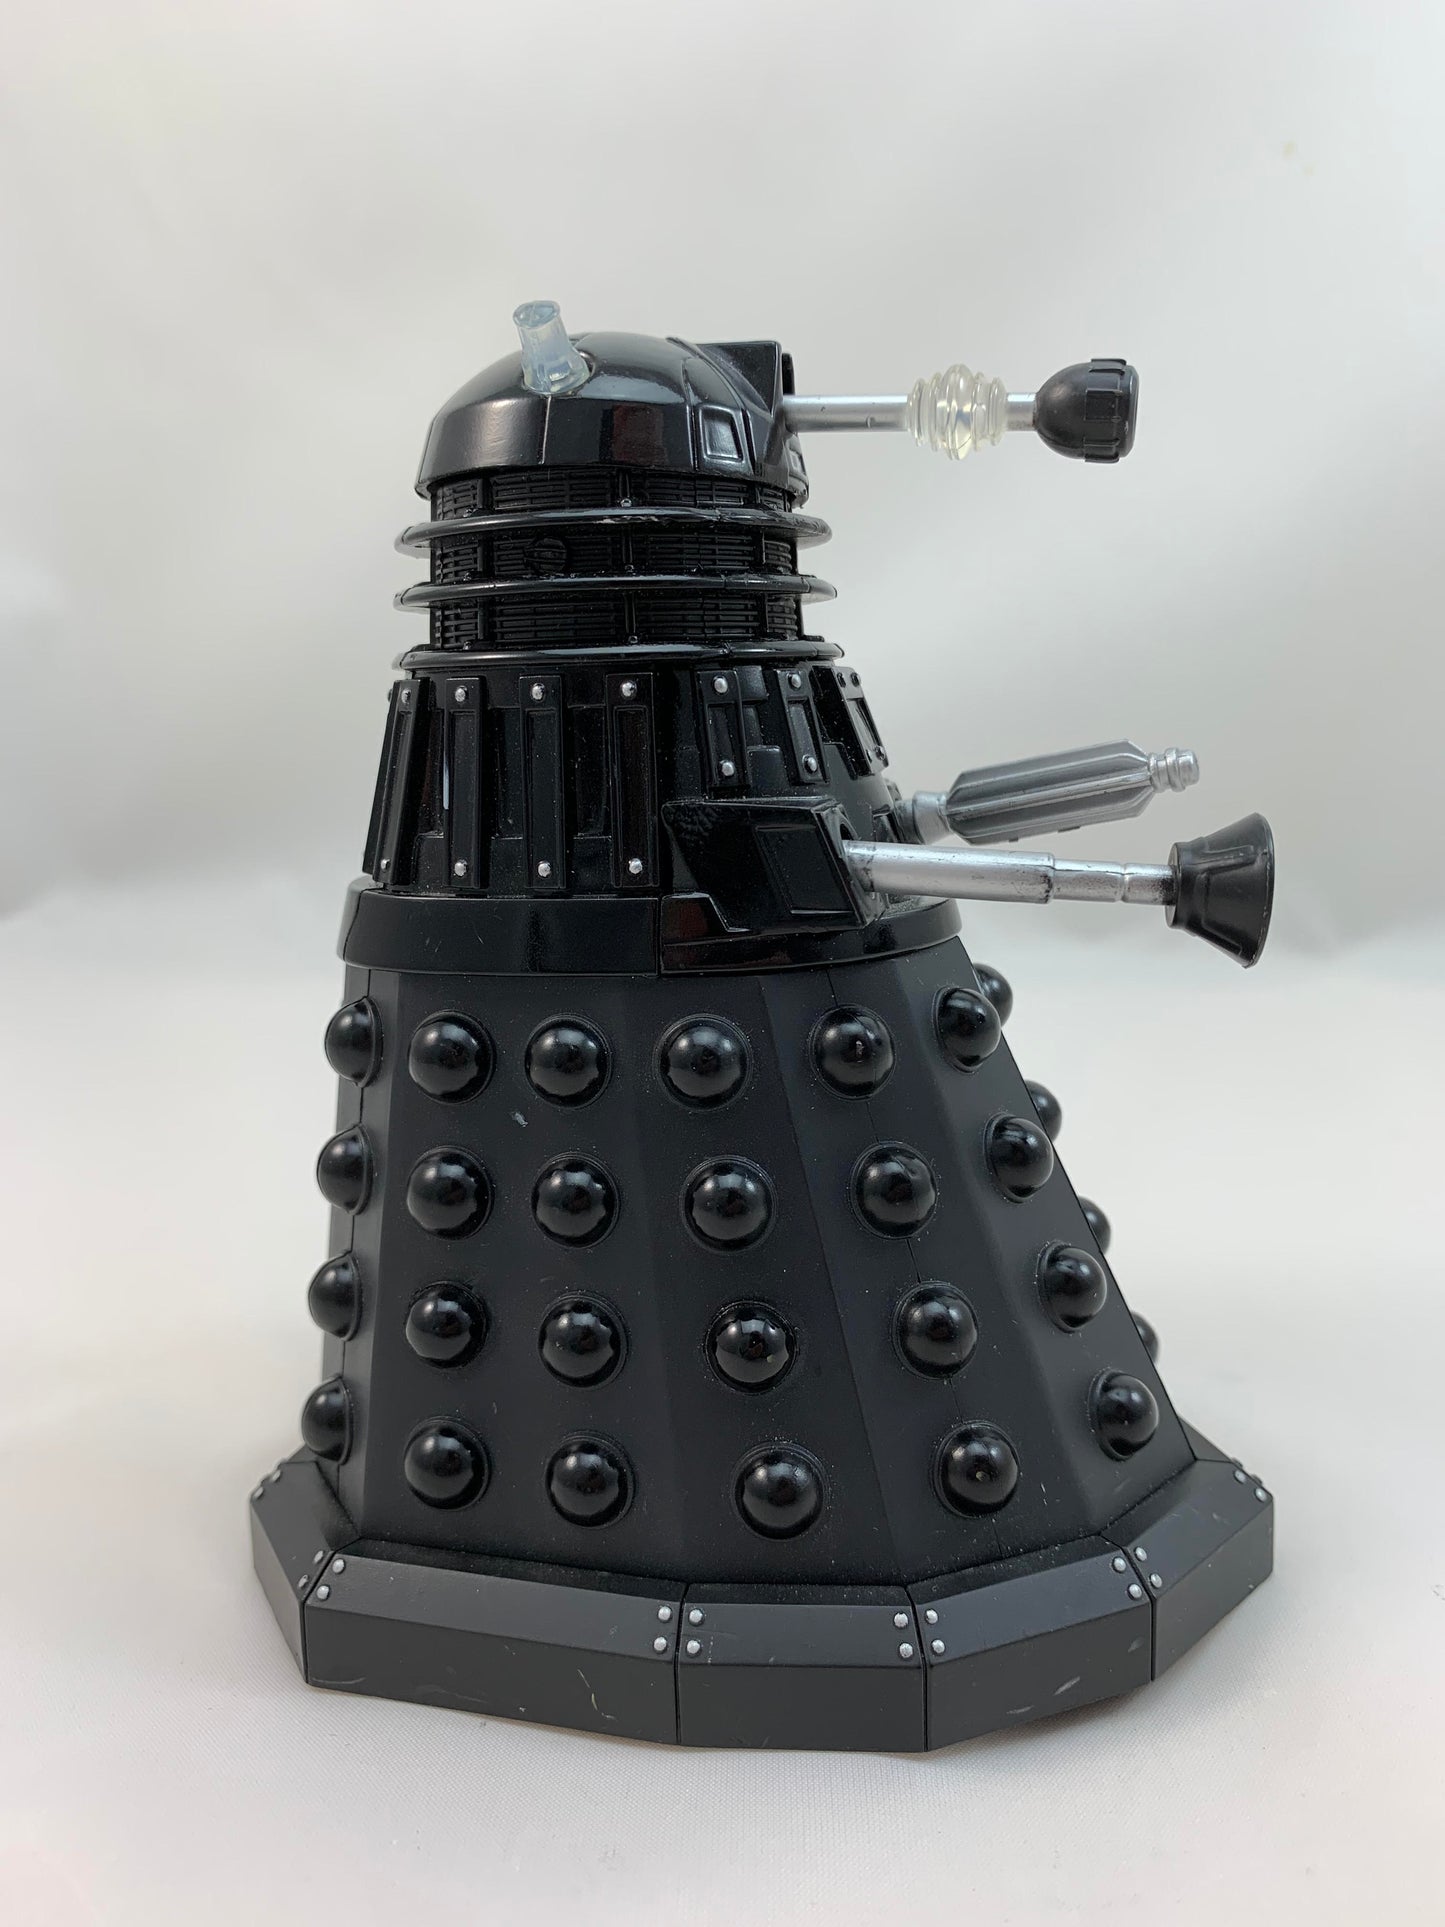 2005 Character Options Dr Doctor Who Dalek Sec Cult Of Skaro Black Dalek  - Loose Action Figure